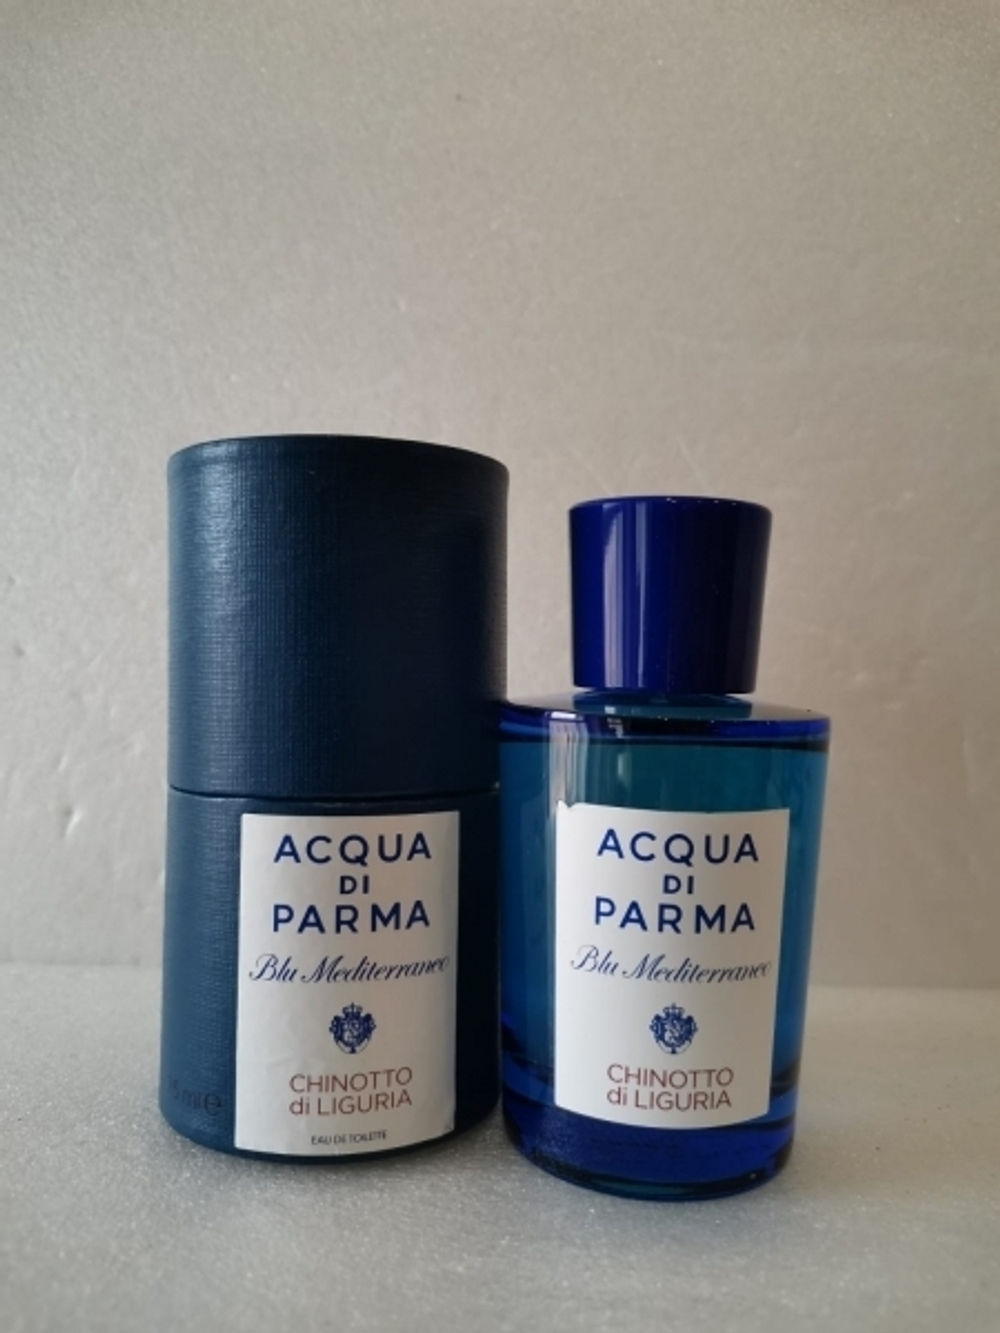 Acqua Di Parma Chinotto Di Liguria 75ml (duty free)